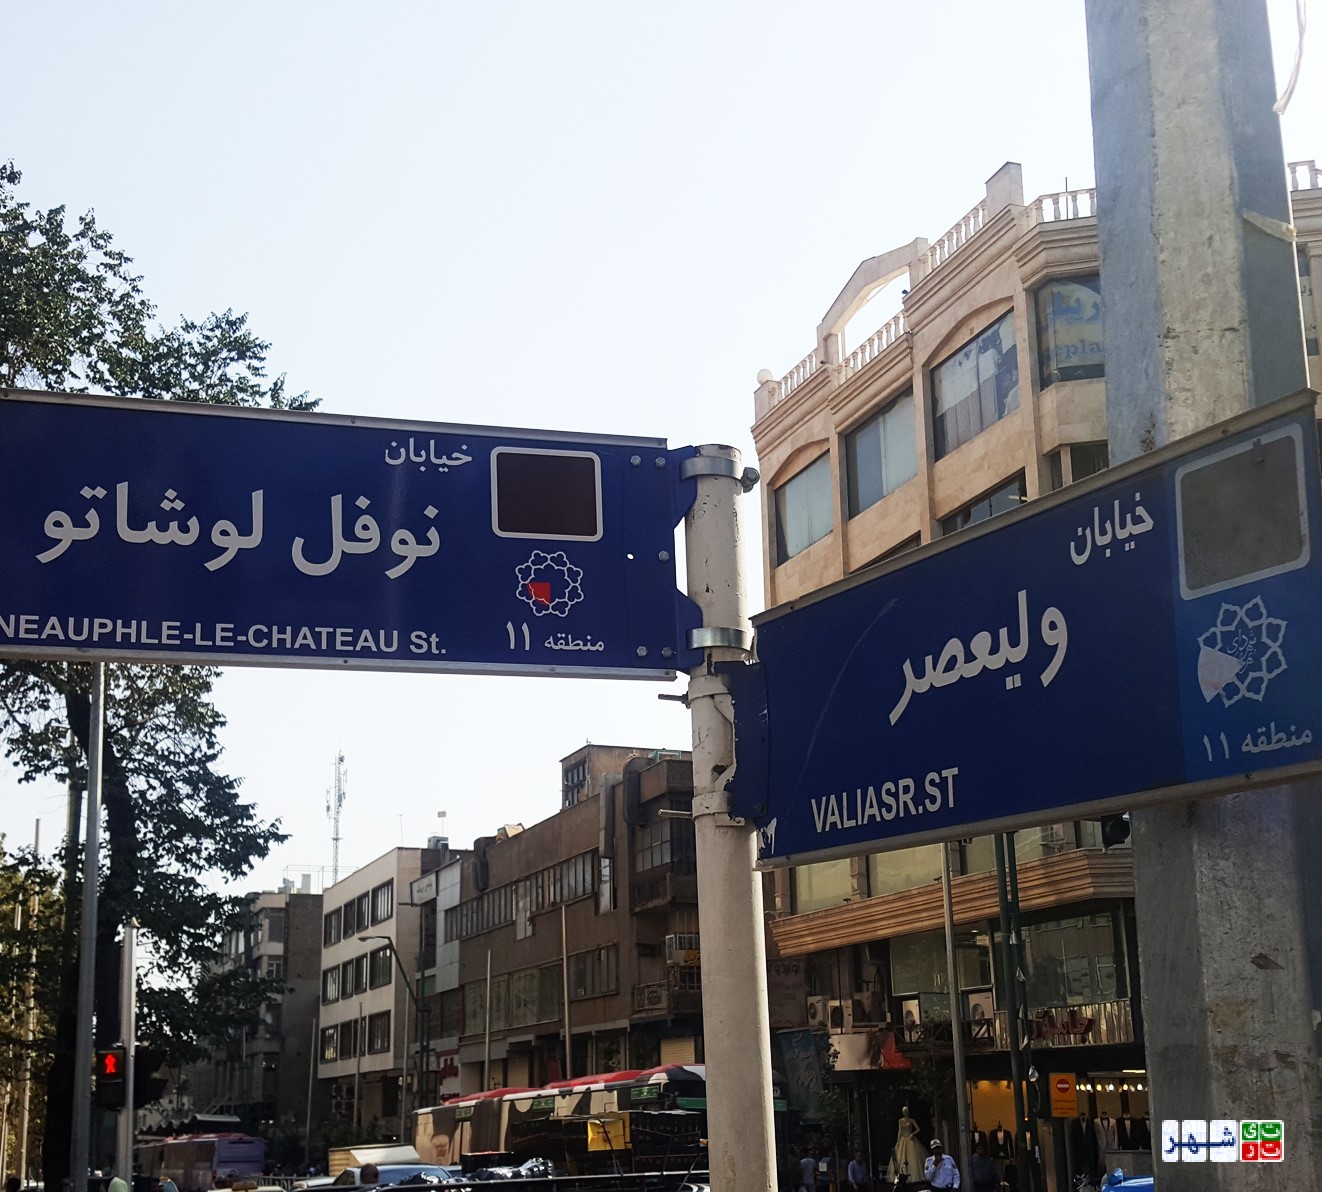 احیای پهنه فرهنگی رودکی با 20 میلیارد تومان بودجه در تهران